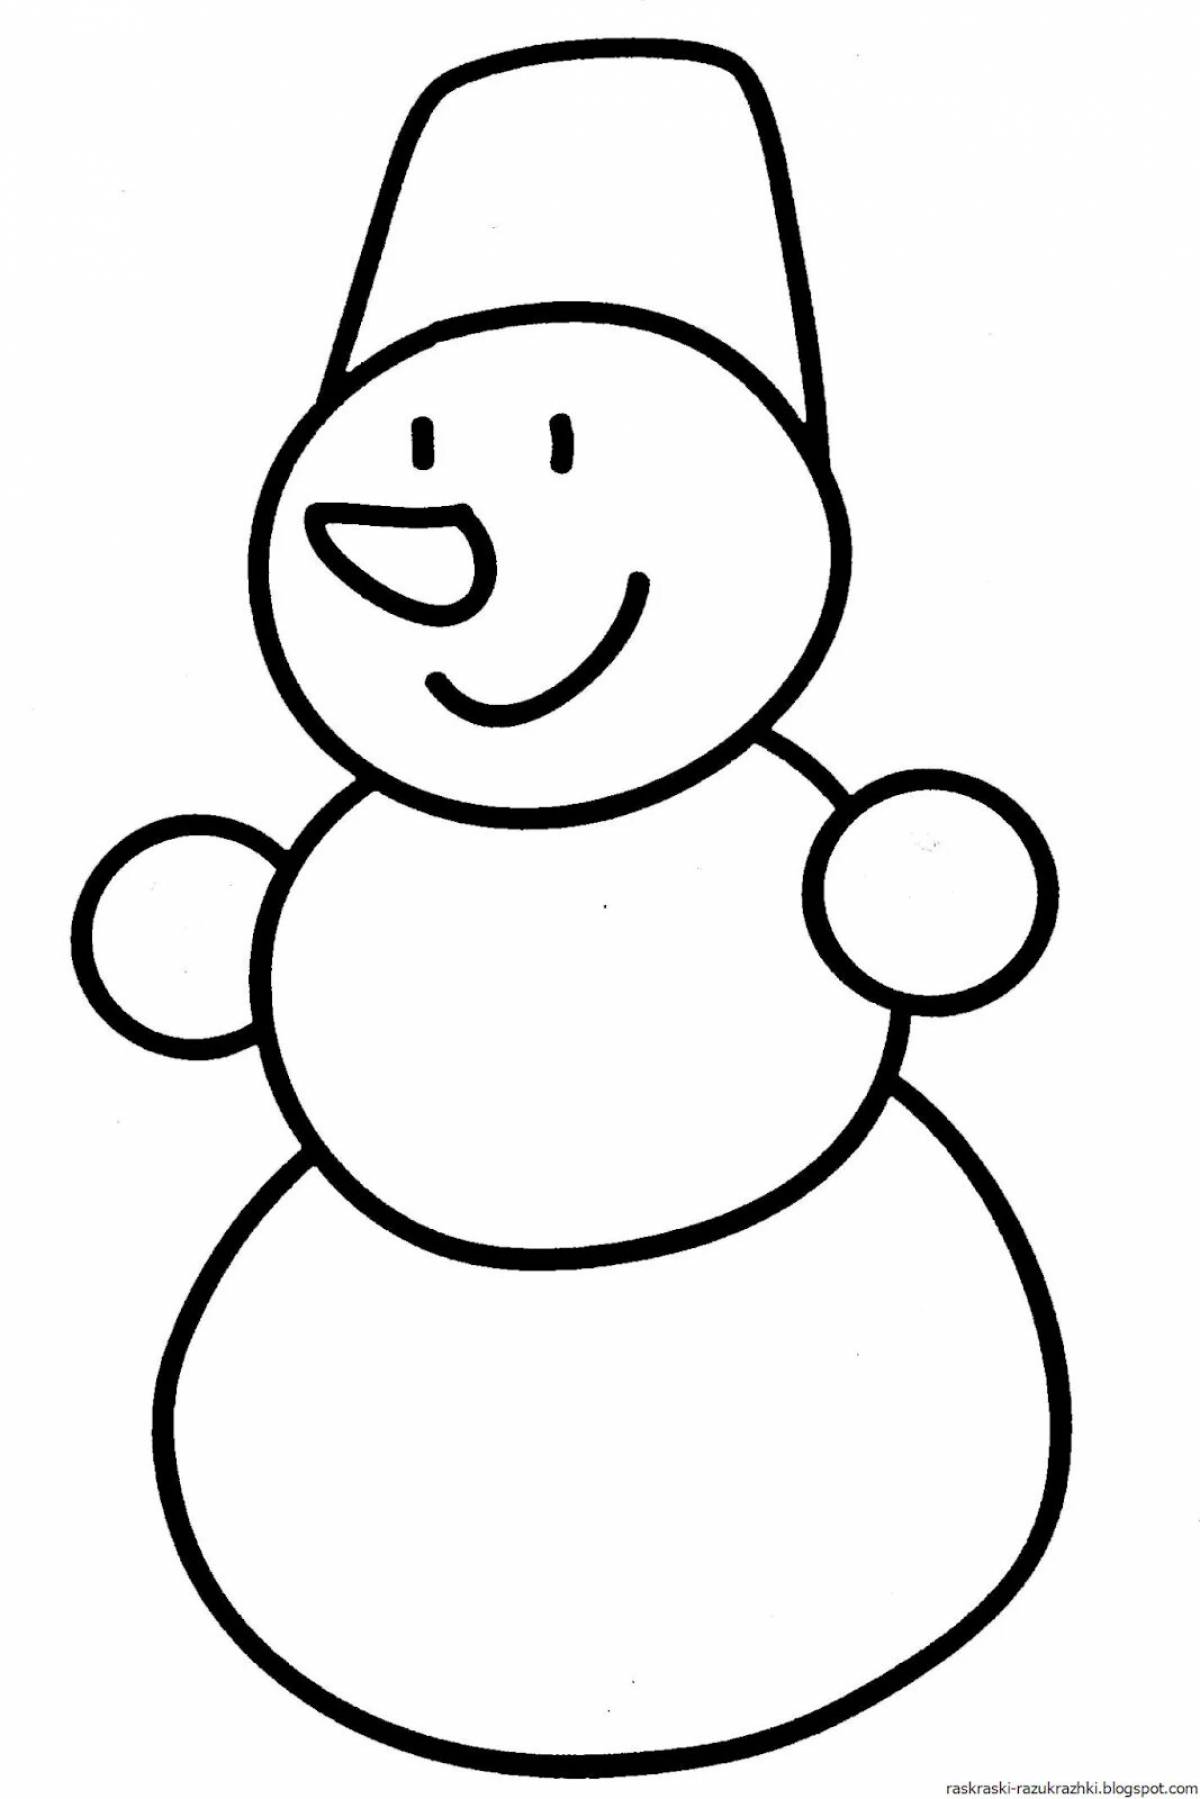 Снеговика для детей 3 4 года #6